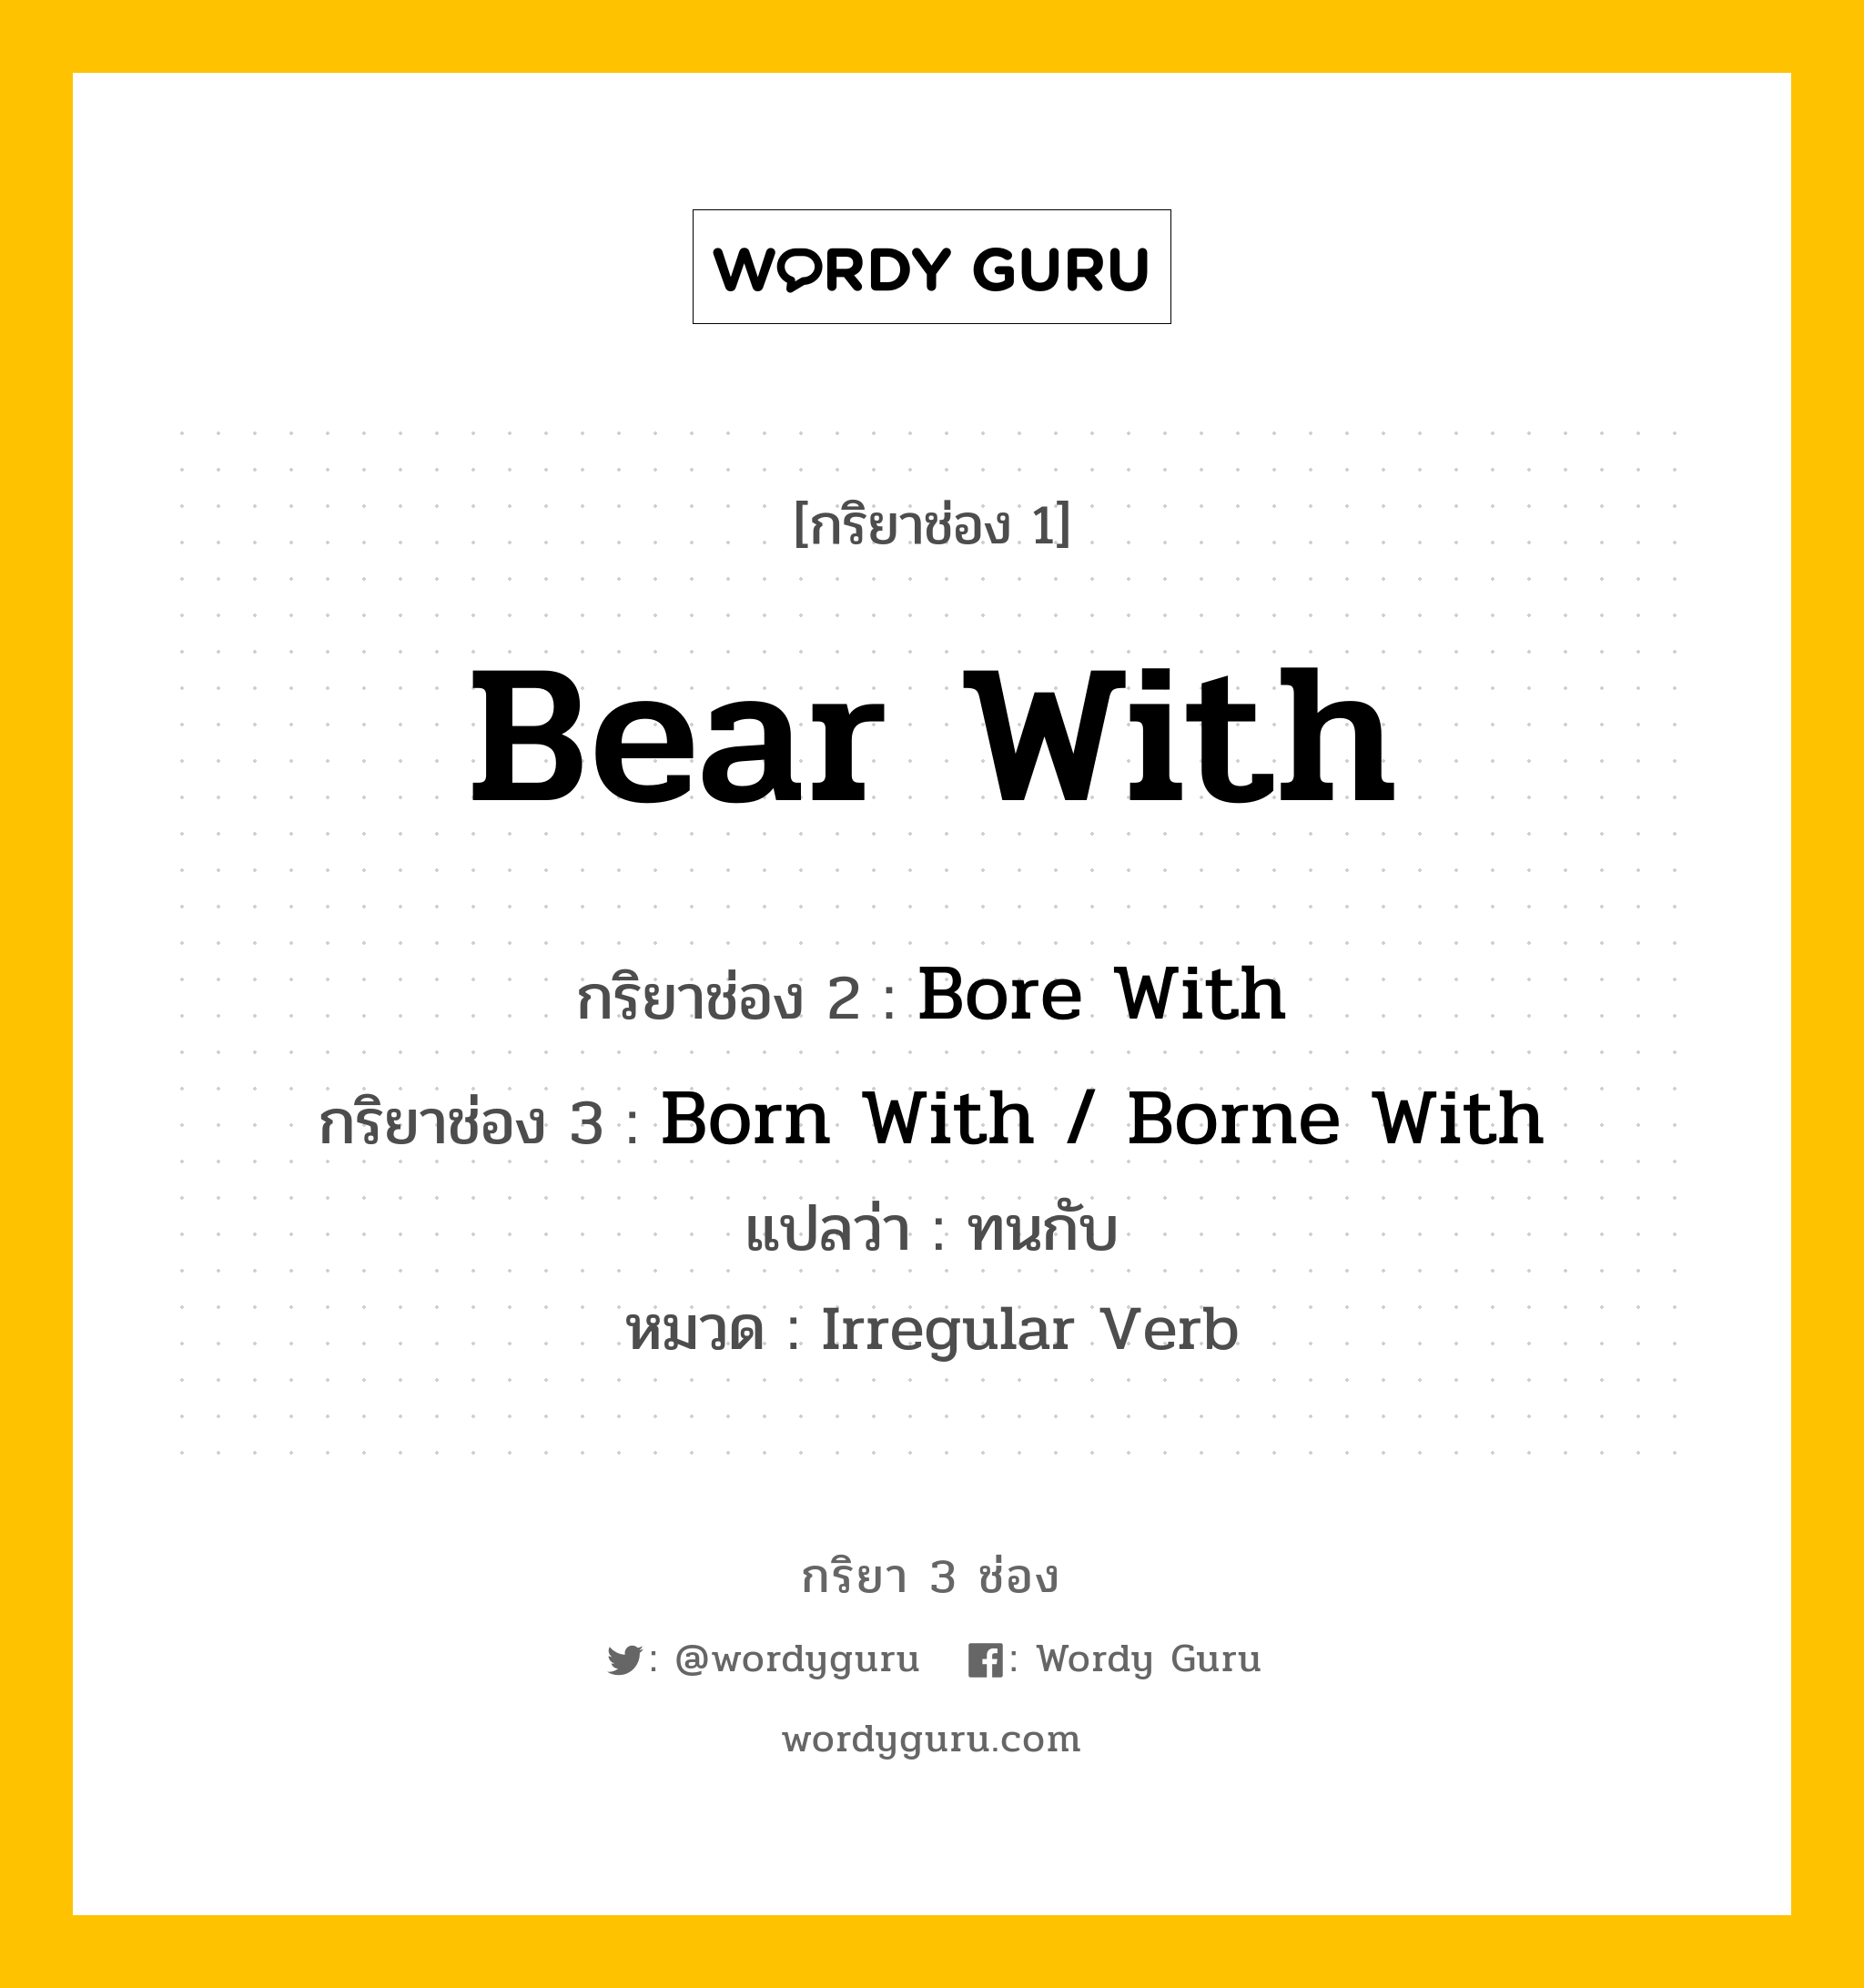 กริยา 3 ช่อง: Bear With ช่อง 2 Bear With ช่อง 3 คืออะไร, กริยาช่อง 1 Bear With กริยาช่อง 2 Bore With กริยาช่อง 3 Born With / Borne With แปลว่า ทนกับ หมวด Irregular Verb หมวด Irregular Verb